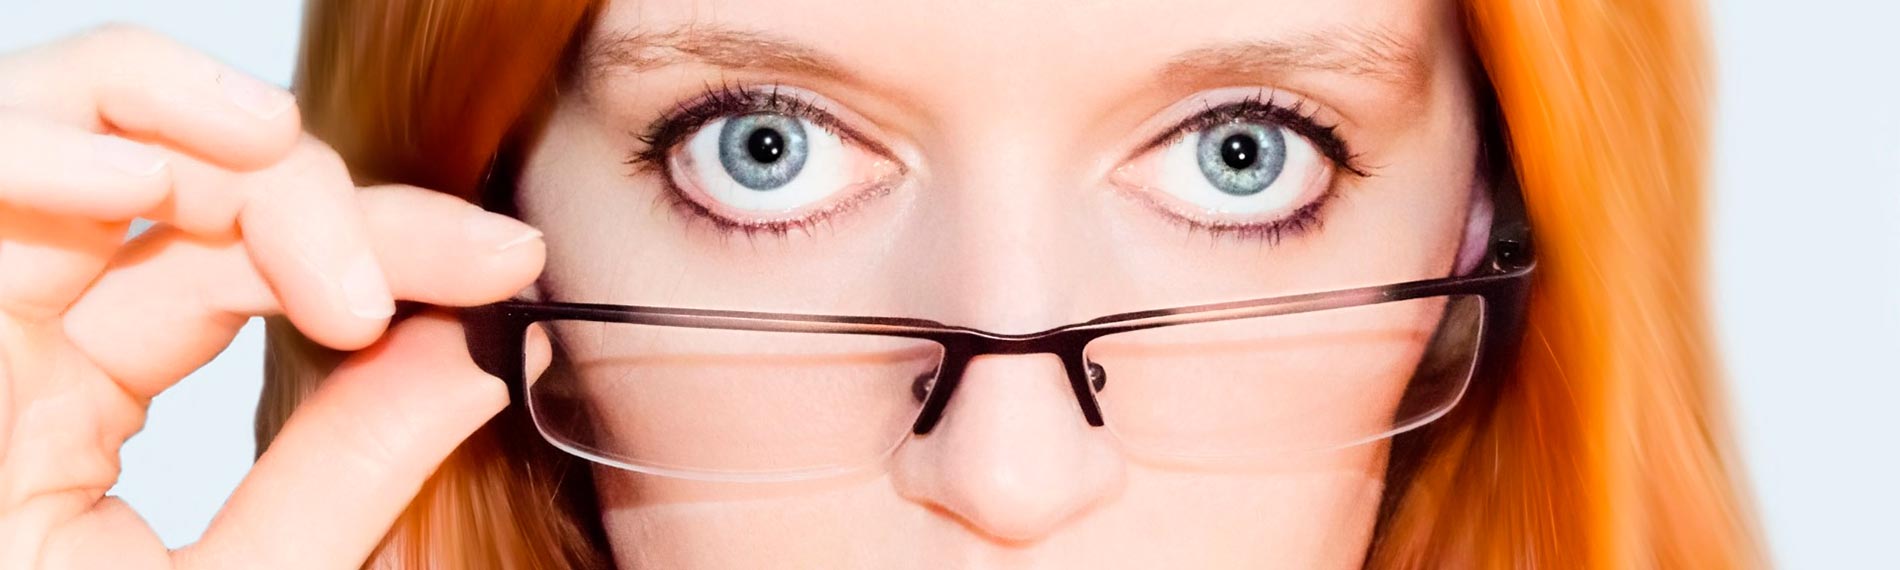 Alrededor del 80 por ciento de la población de la CDMX presenta algún grado de astigmatismo